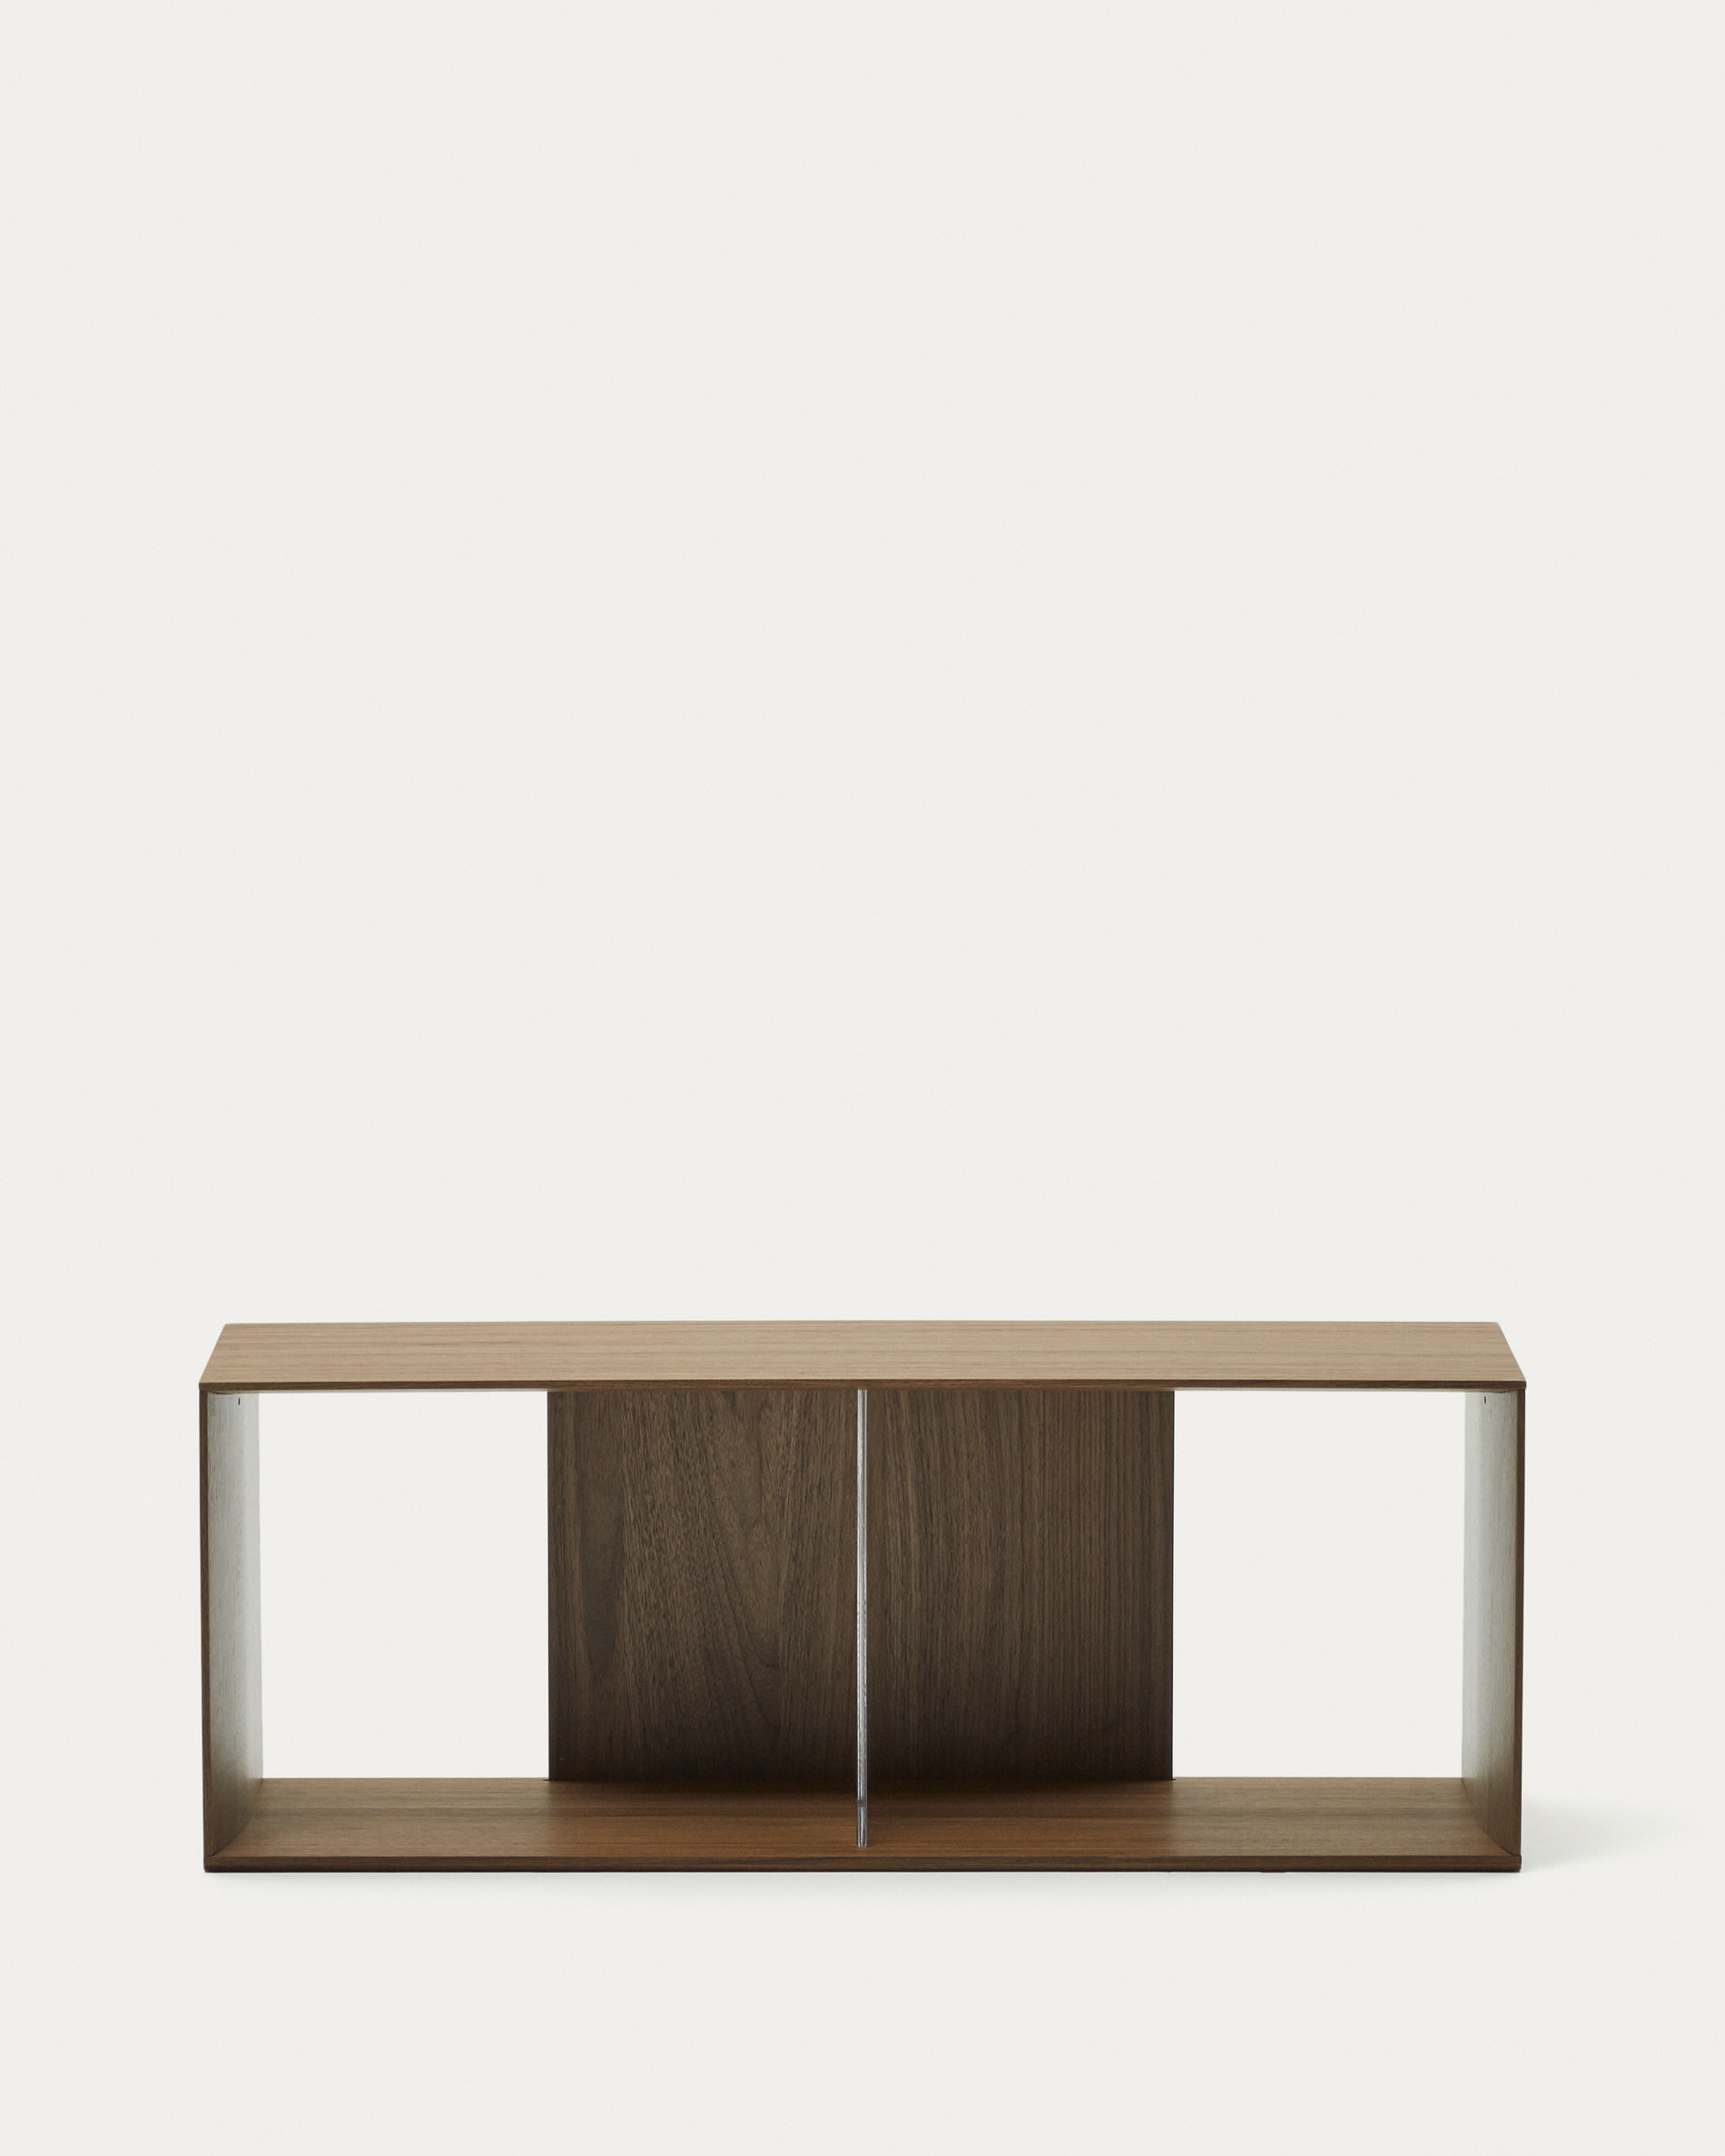 Litto large shelf module in walnut veneer, 101 x 38 cm